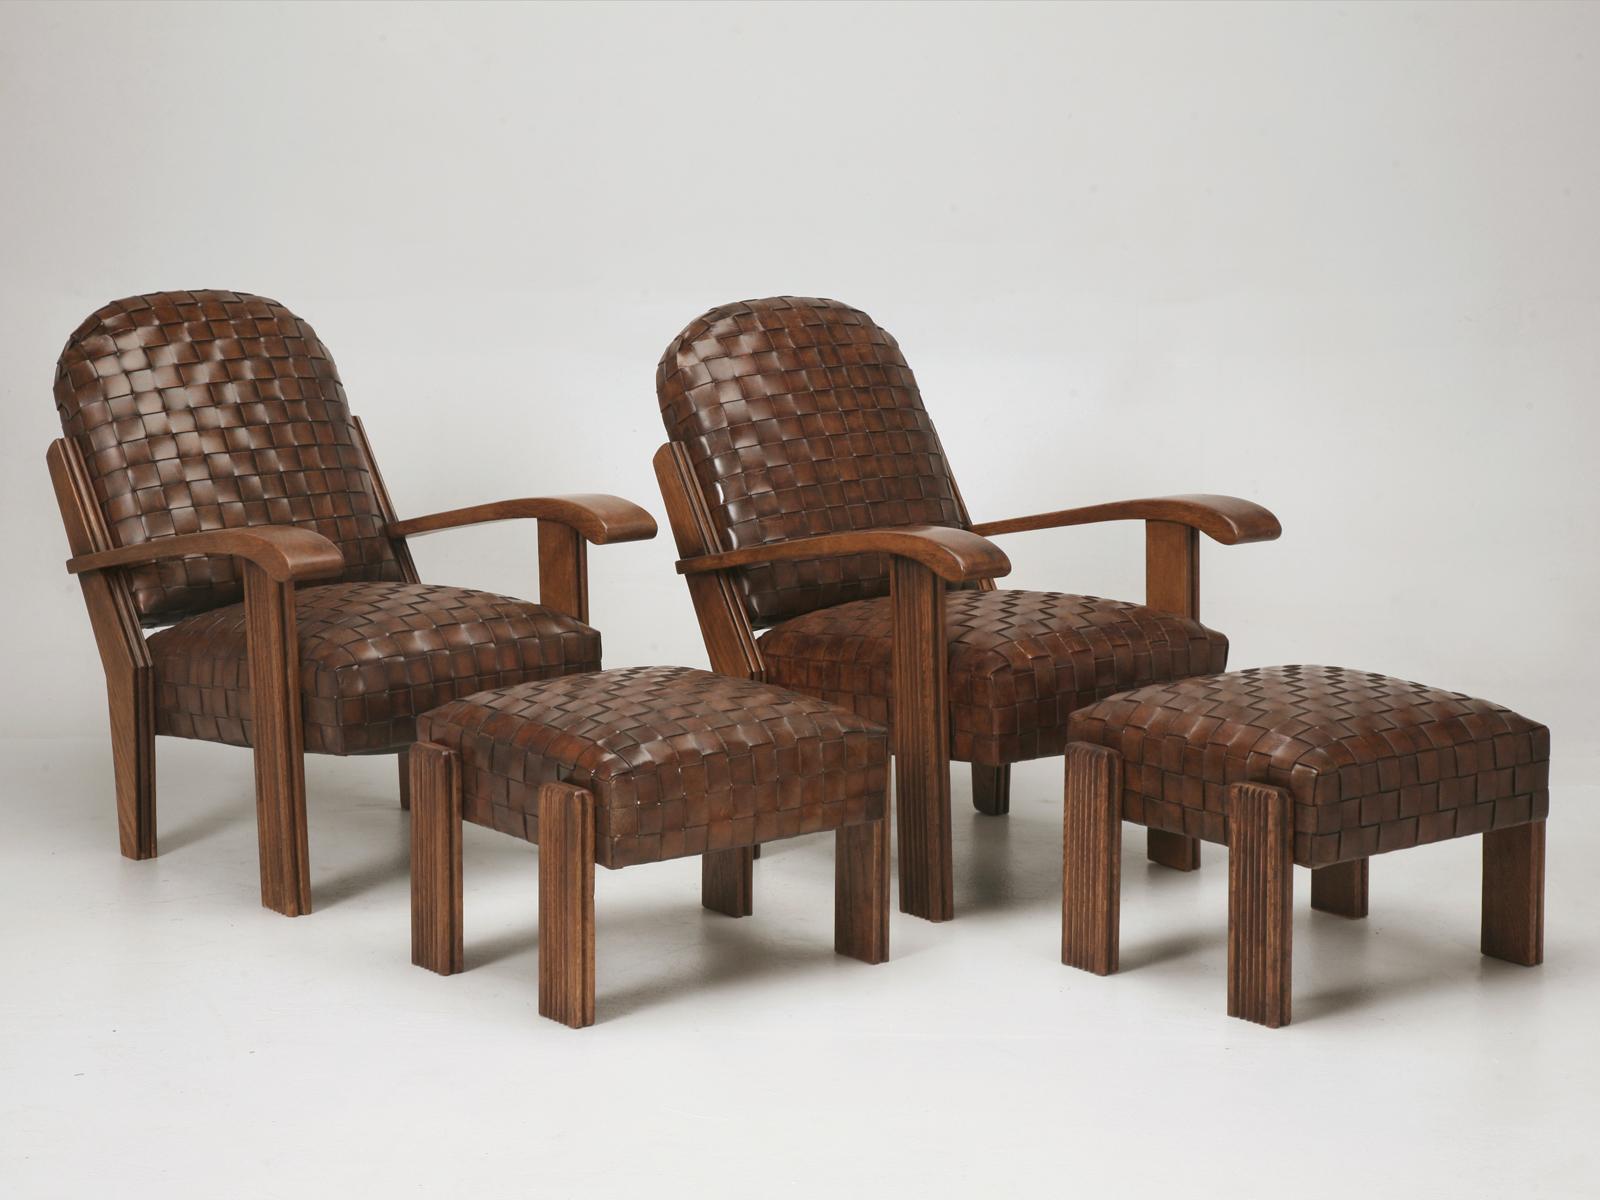 Die in unserer Old Plank Werkstatt gefertigten Stühle sind eine exakte Kopie eines Originalpaares von ca. 1910-1920, das wir vor über 20 Jahren in Frankreich gekauft haben. Der einzige wirkliche Unterschied besteht darin, dass wir sie durch die